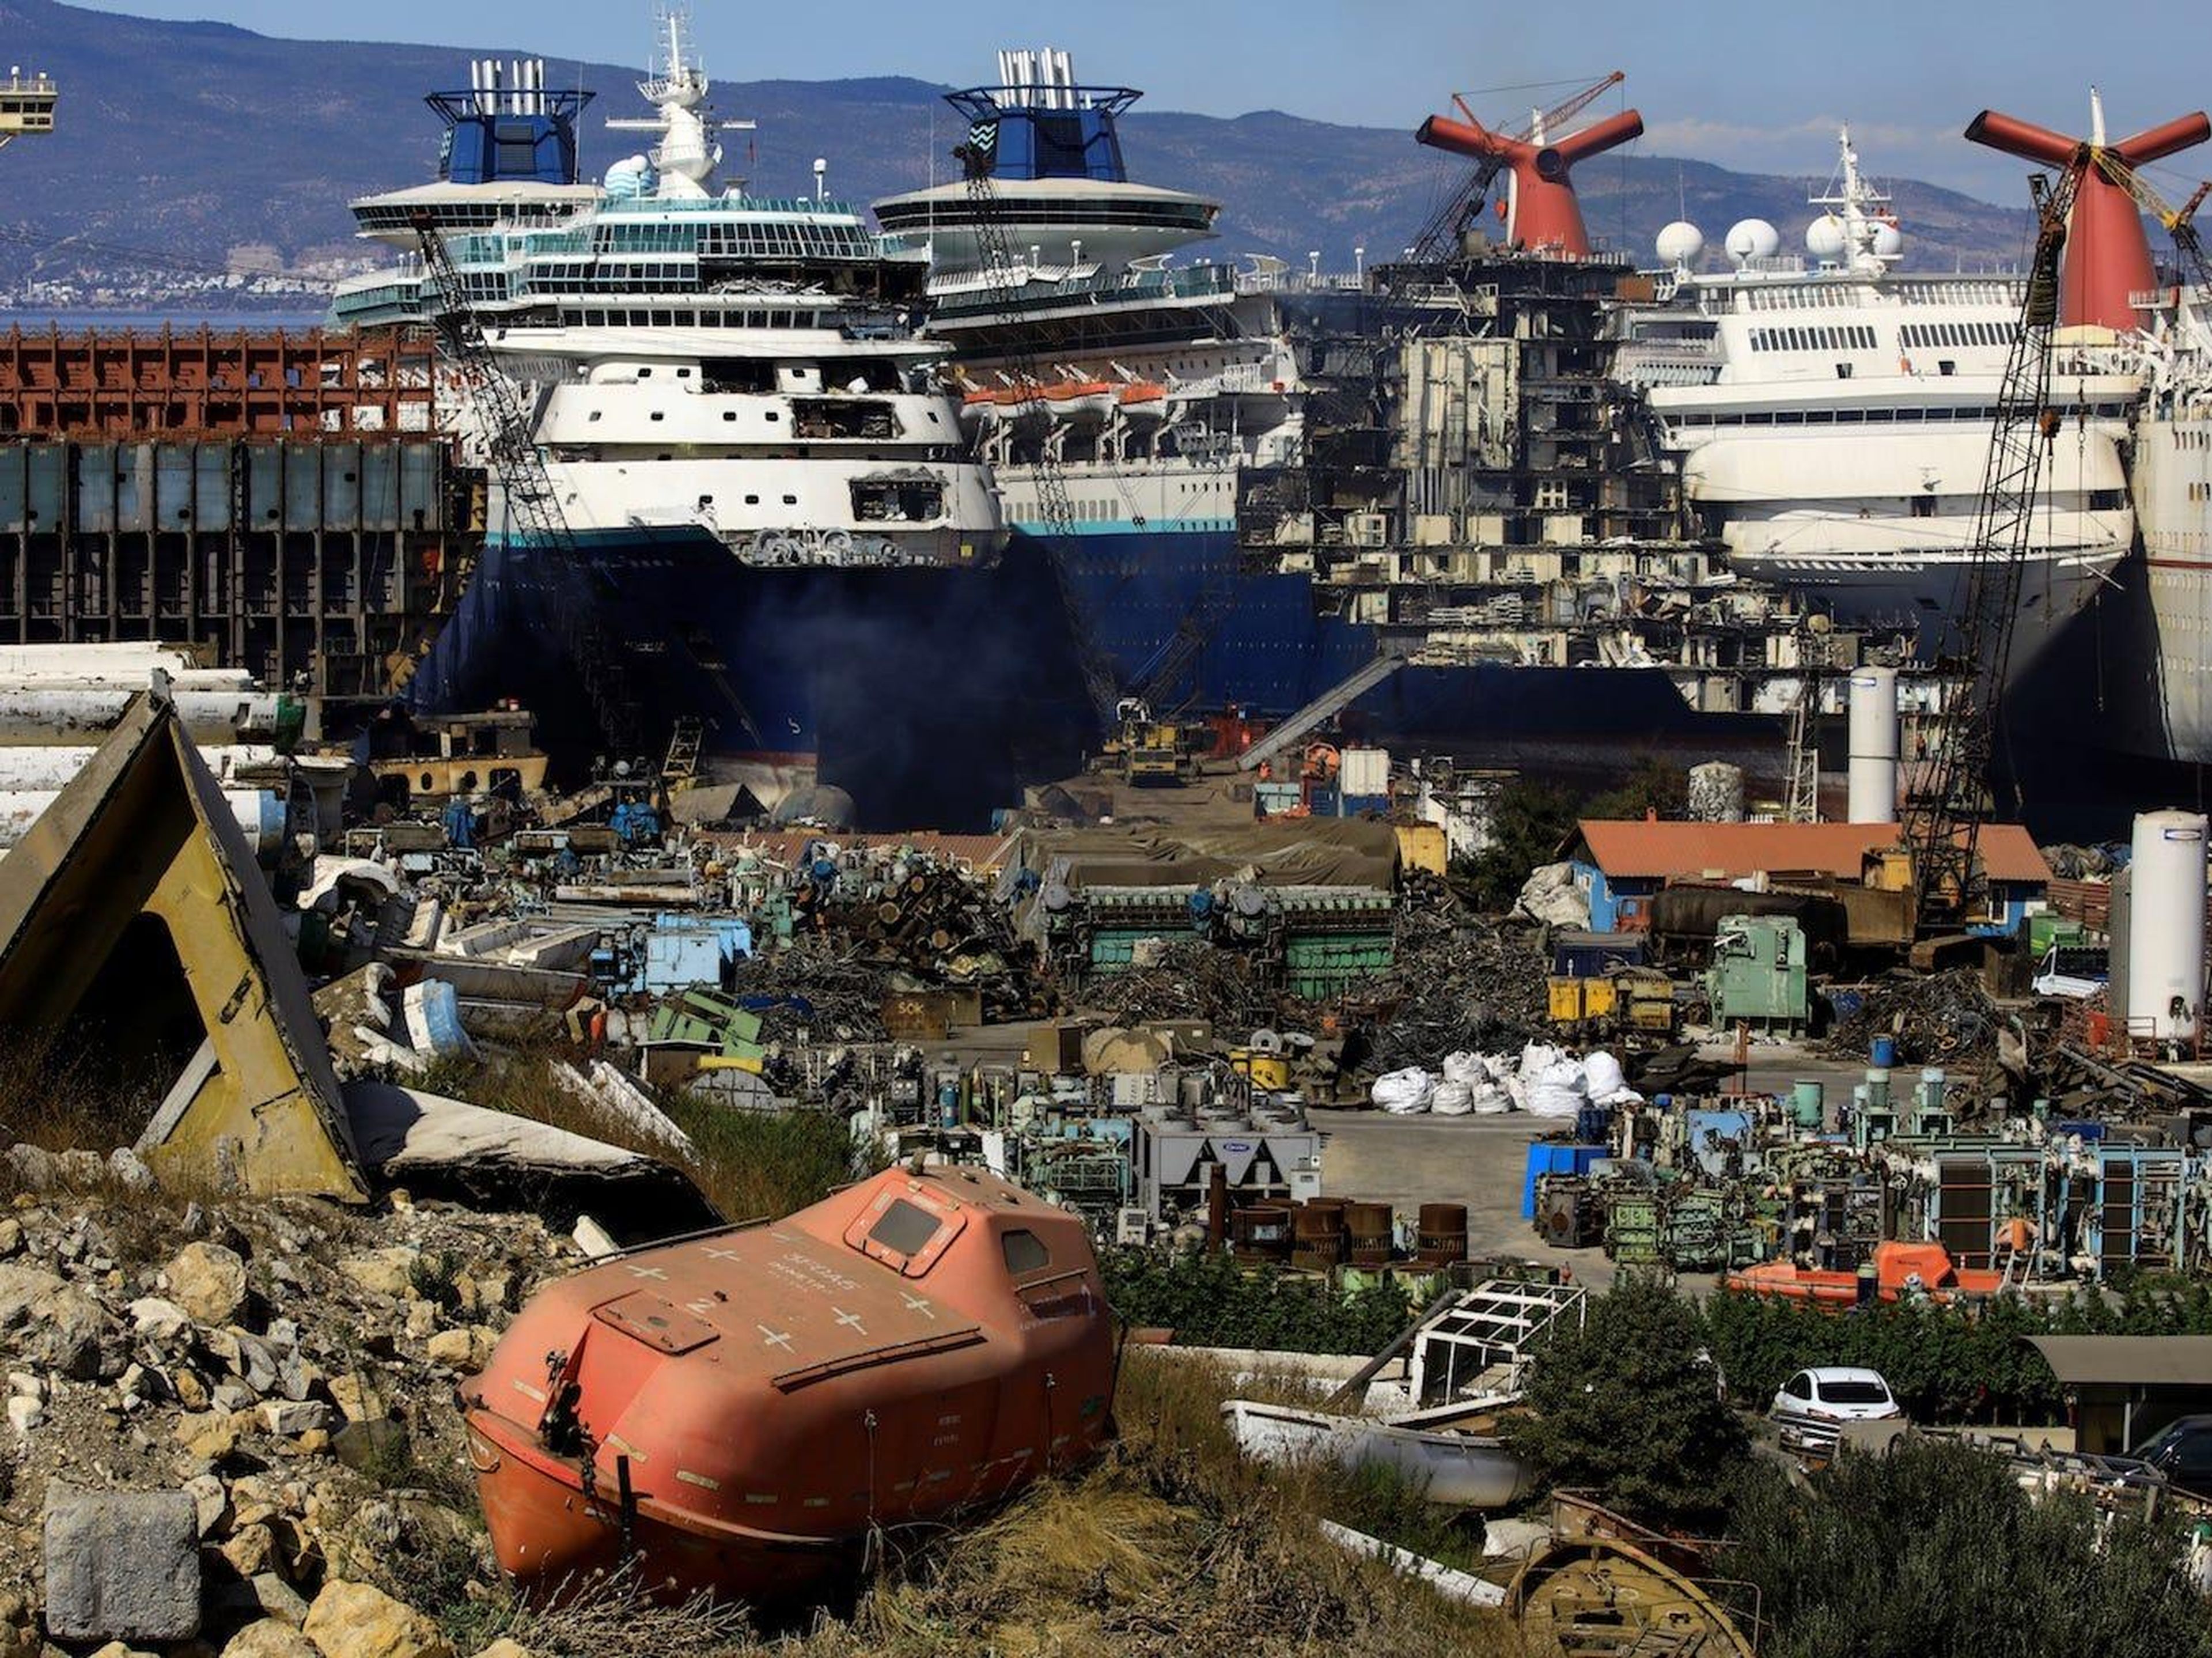 Los cruceros retirados del servicio están siendo desmantelados en el astillero de desguace Aliaga en la ciudad portuaria egea de Izmir, al oeste de Turquía, el 2 de octubre de 2020.